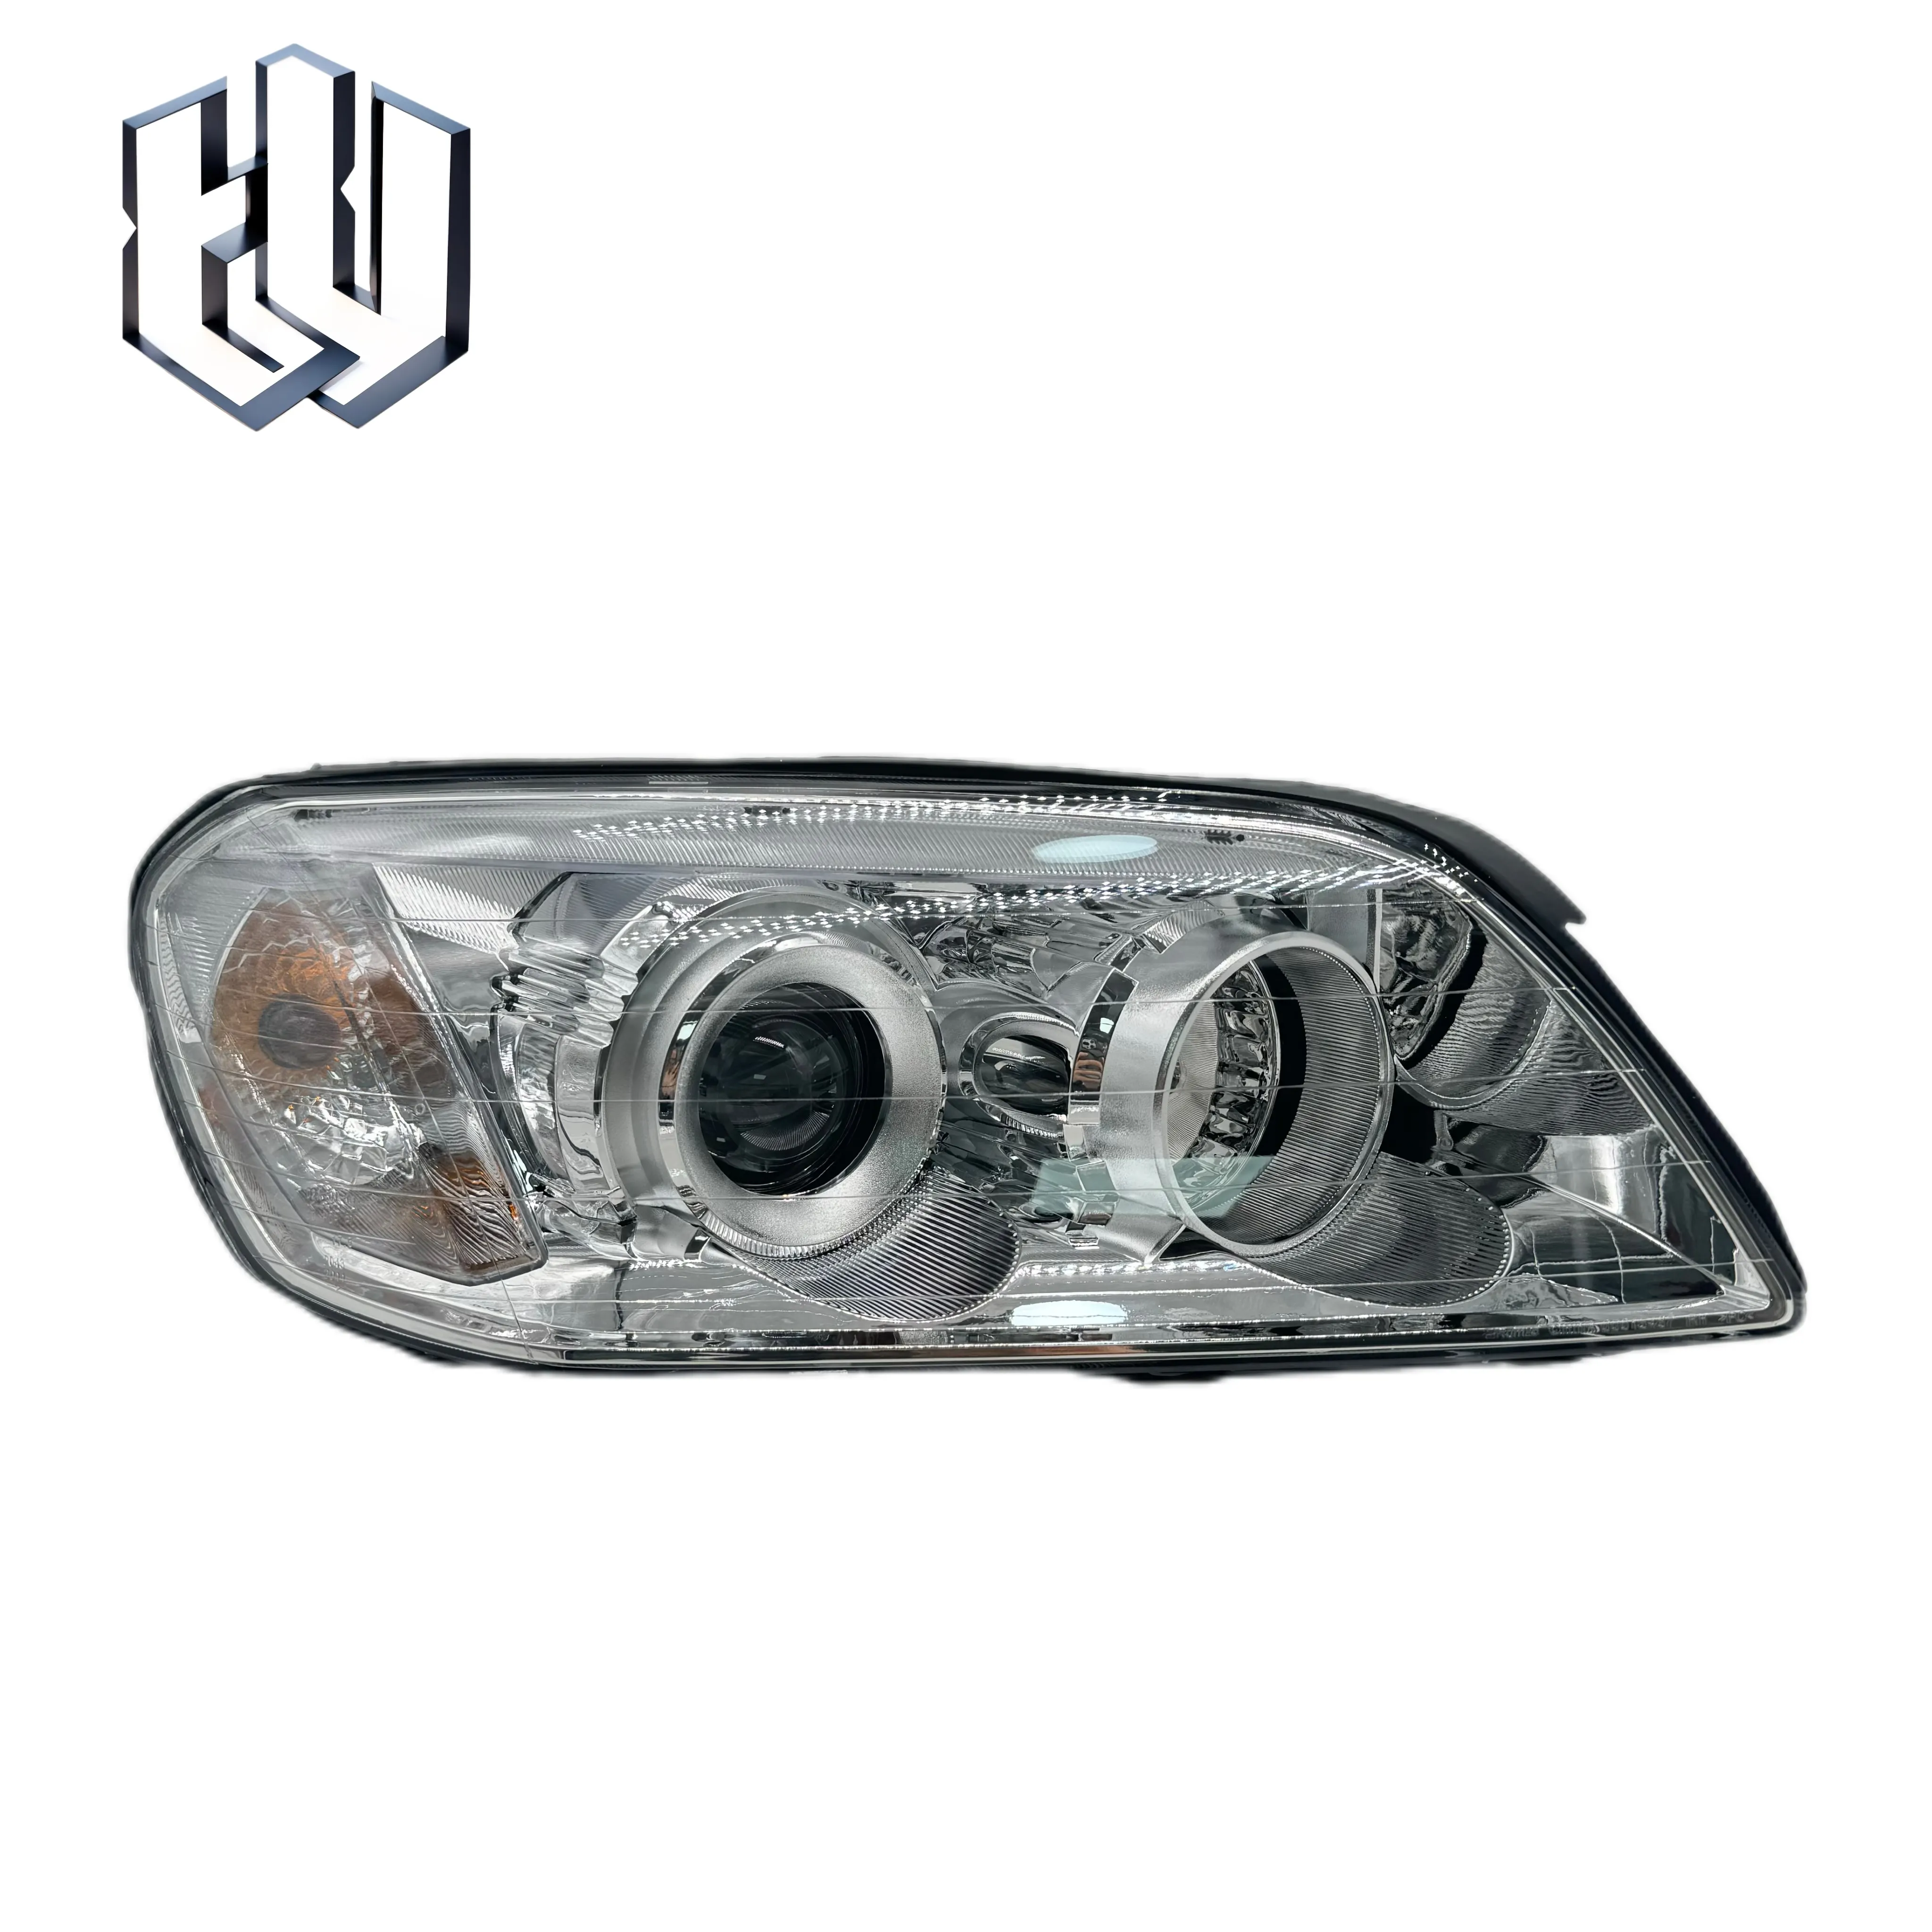 OEM 96626973 96626974 auto parts Chinese Europe type headlight headlamp Captiva 2009 2010 2011 2012 2013 for Indian market